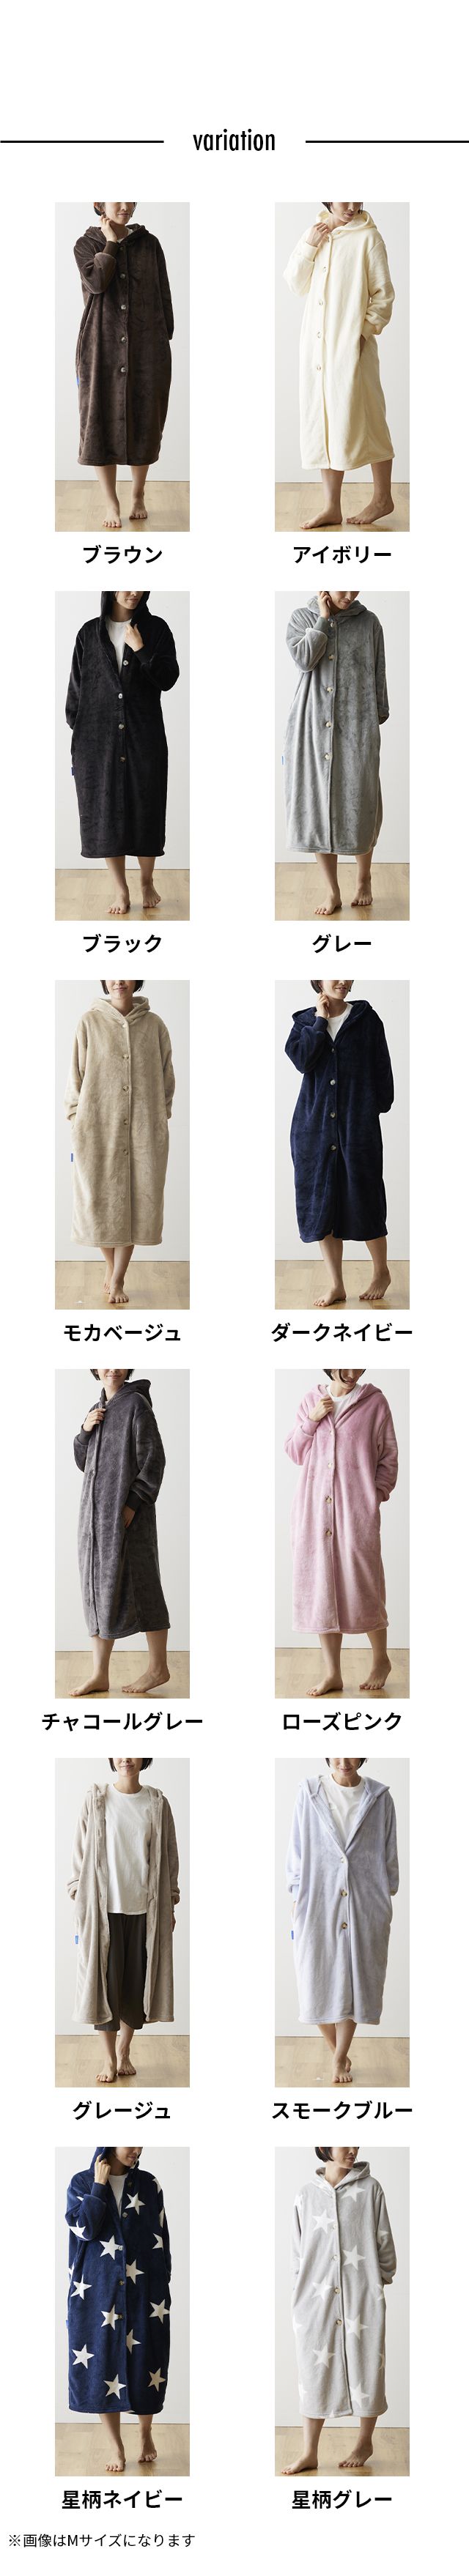 mofua (モフア) プレミアムマイクロファイバー着る毛布 フード付 L 着丈約125cm